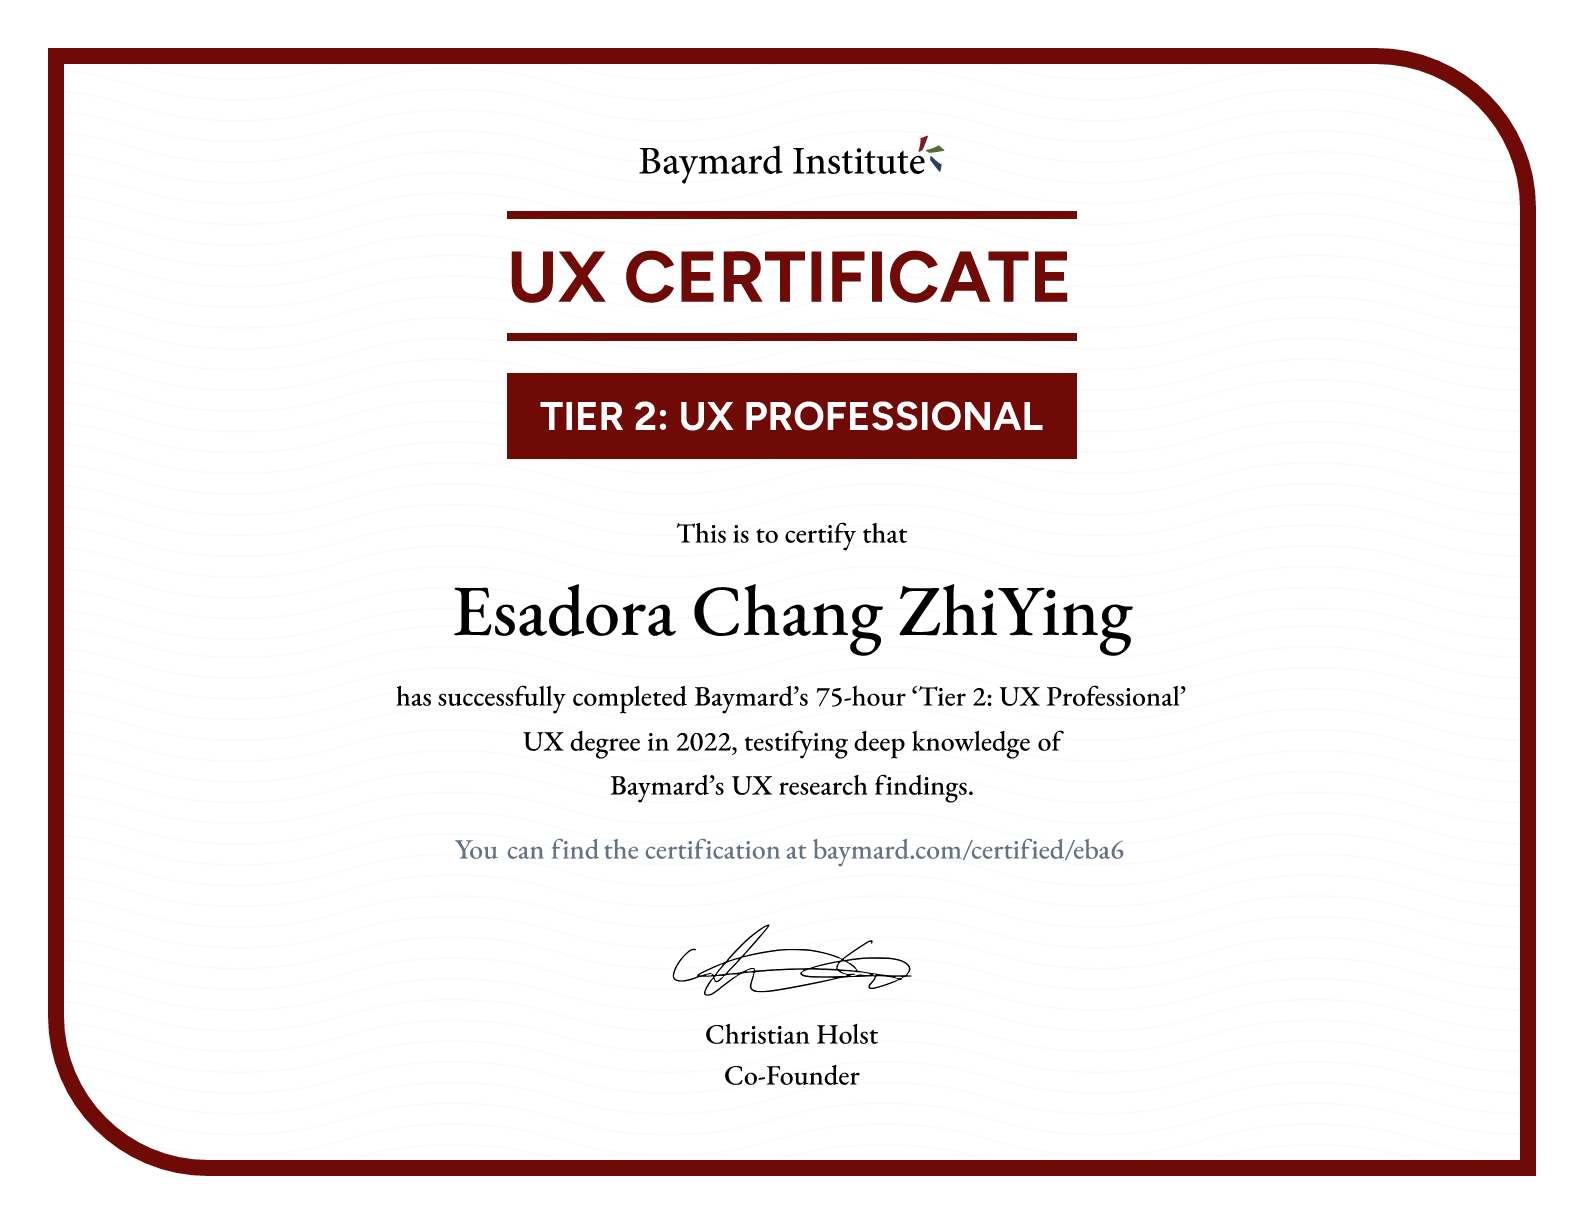 Esadora Chang ZhiYing’s certificate